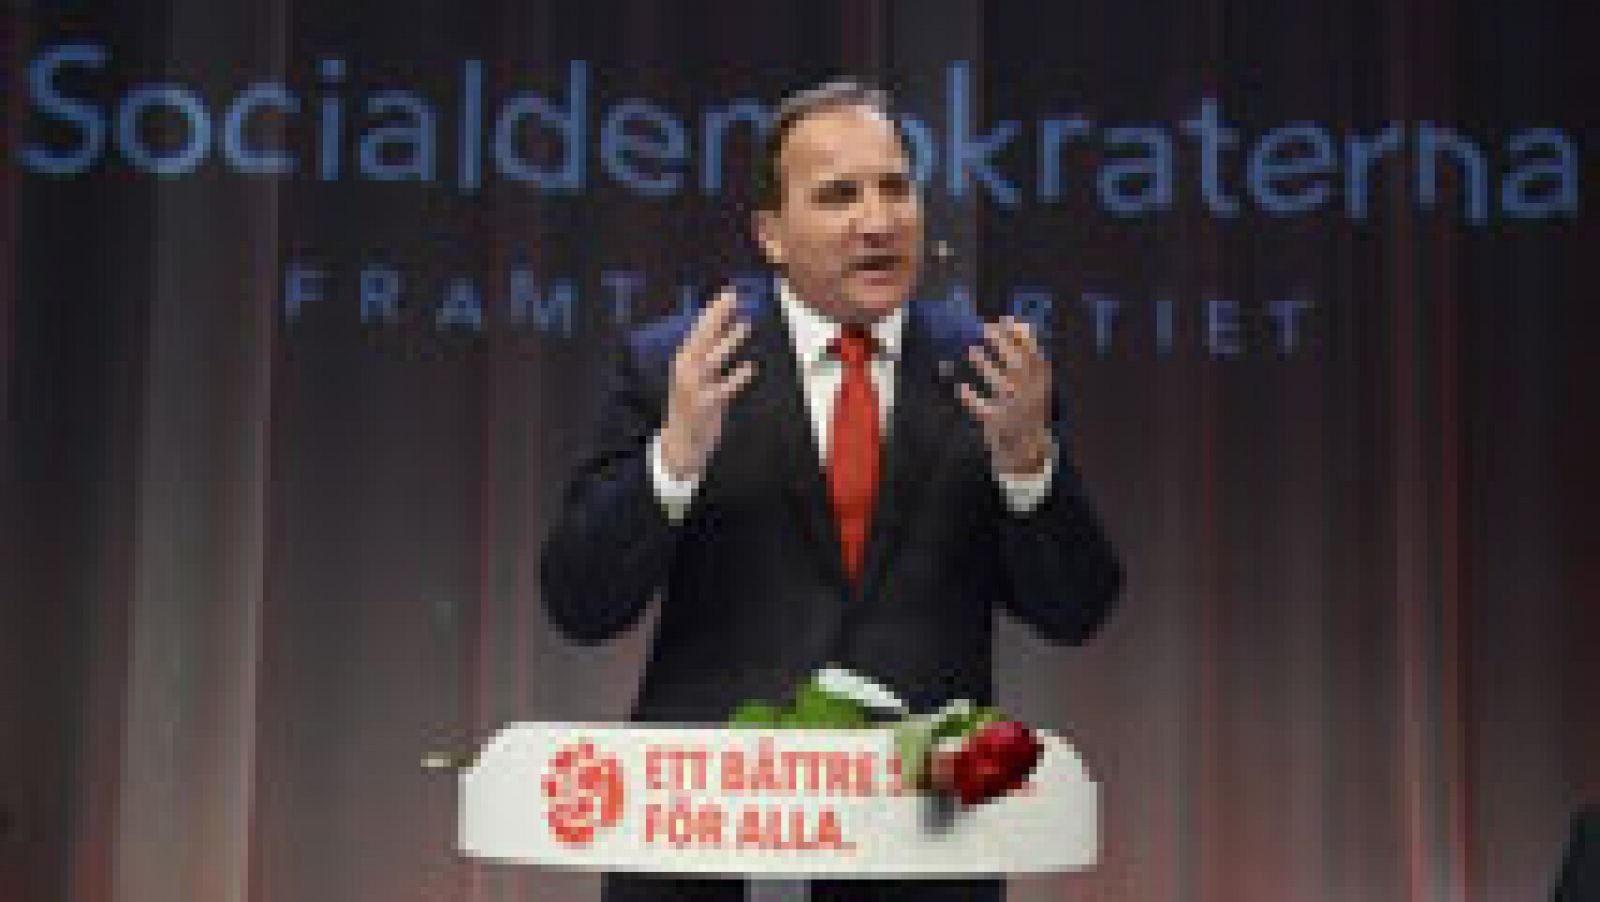  La oposición de izquierda gana las elecciones suecas